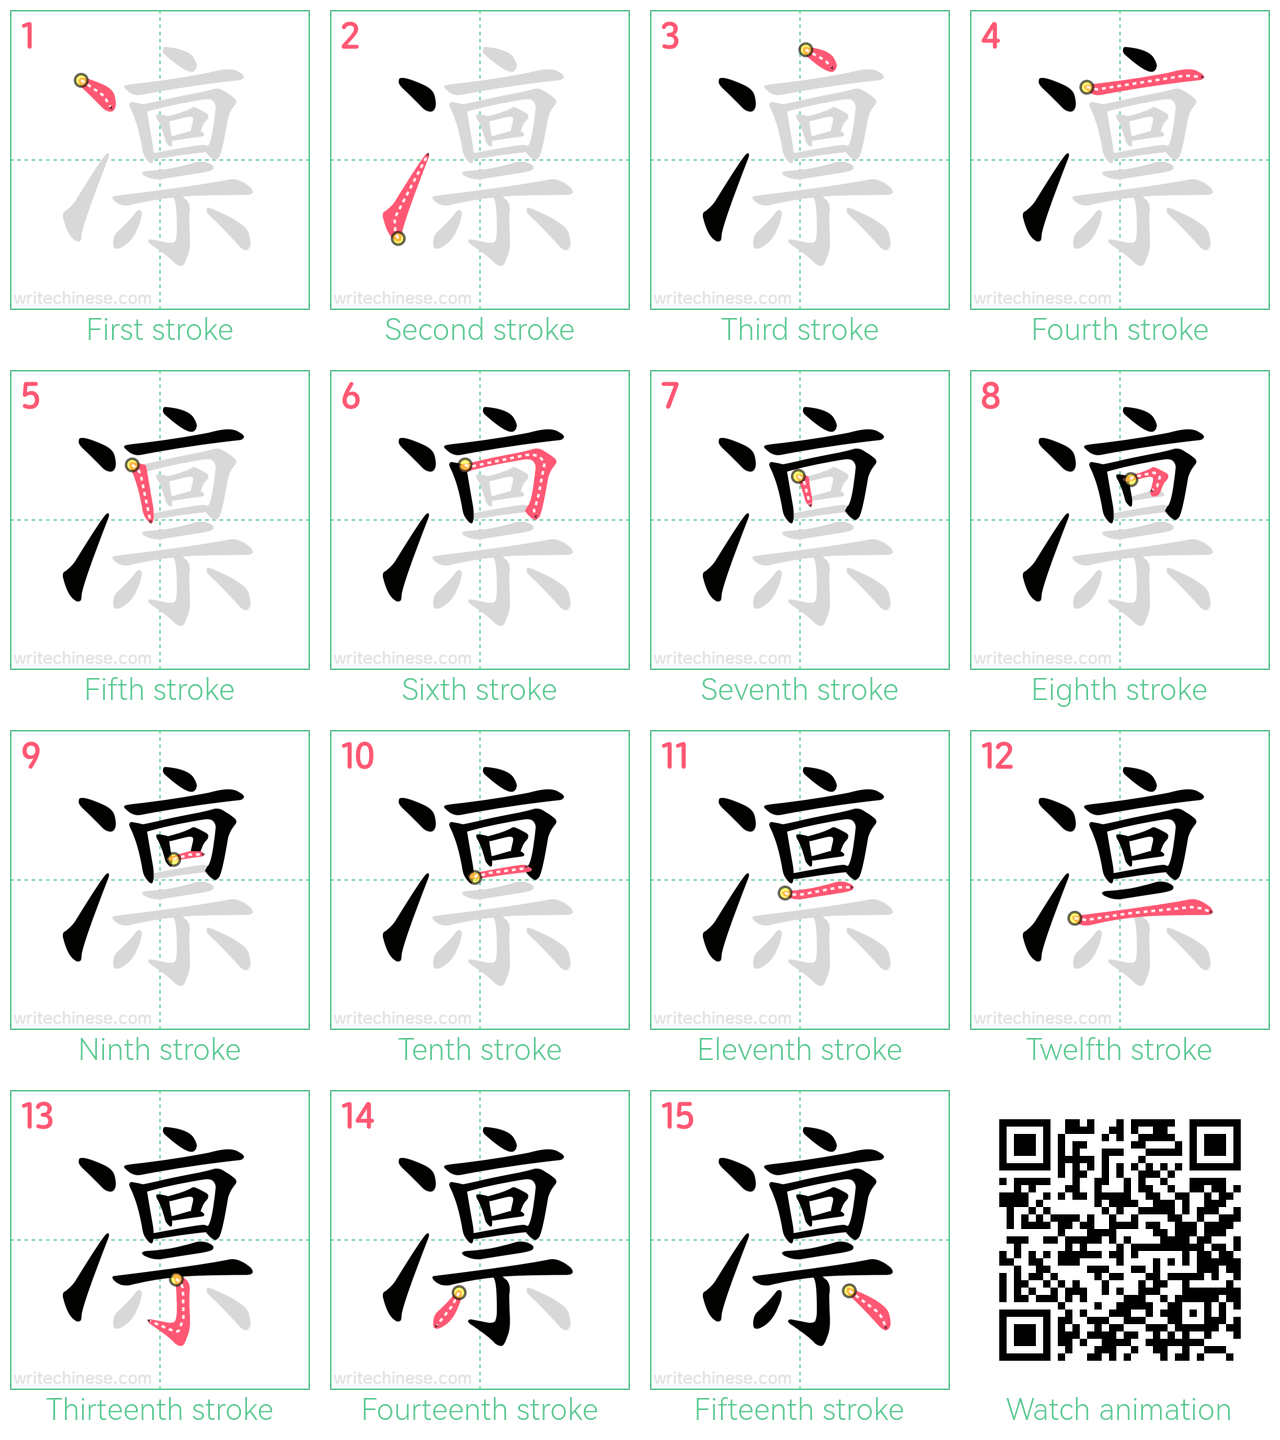 凛 step-by-step stroke order diagrams